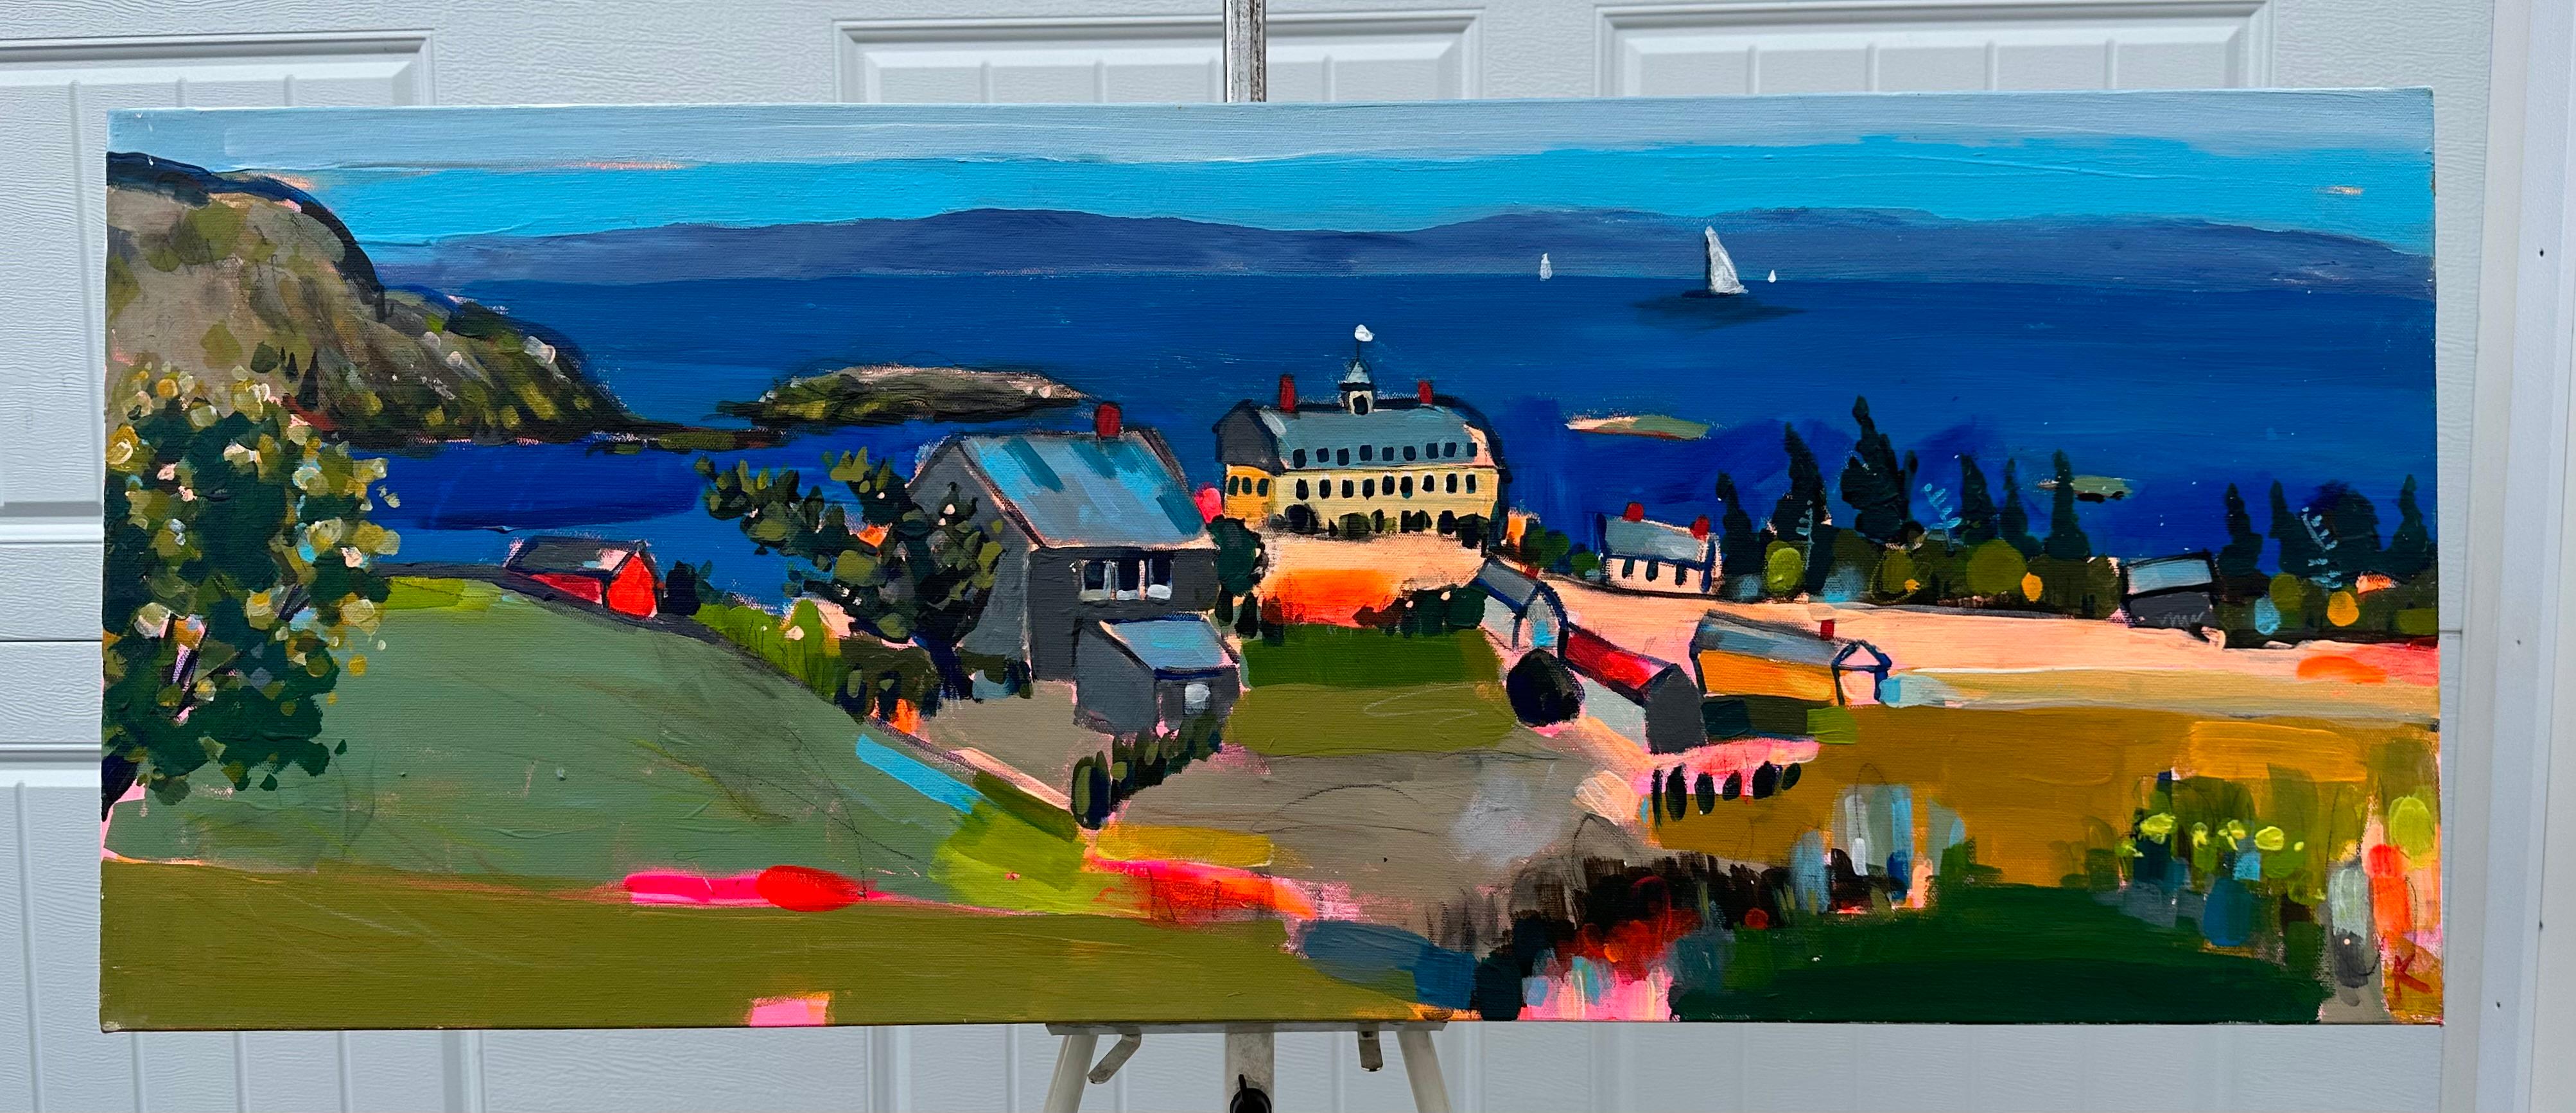 <p>Commentaires de l'artiste<br>L'artiste Rebecca Klementovich partage un point de vue coloré sur la magnifique île de Monhegan, l'un de ses endroits préférés pour peindre au large de la côte du Maine. 